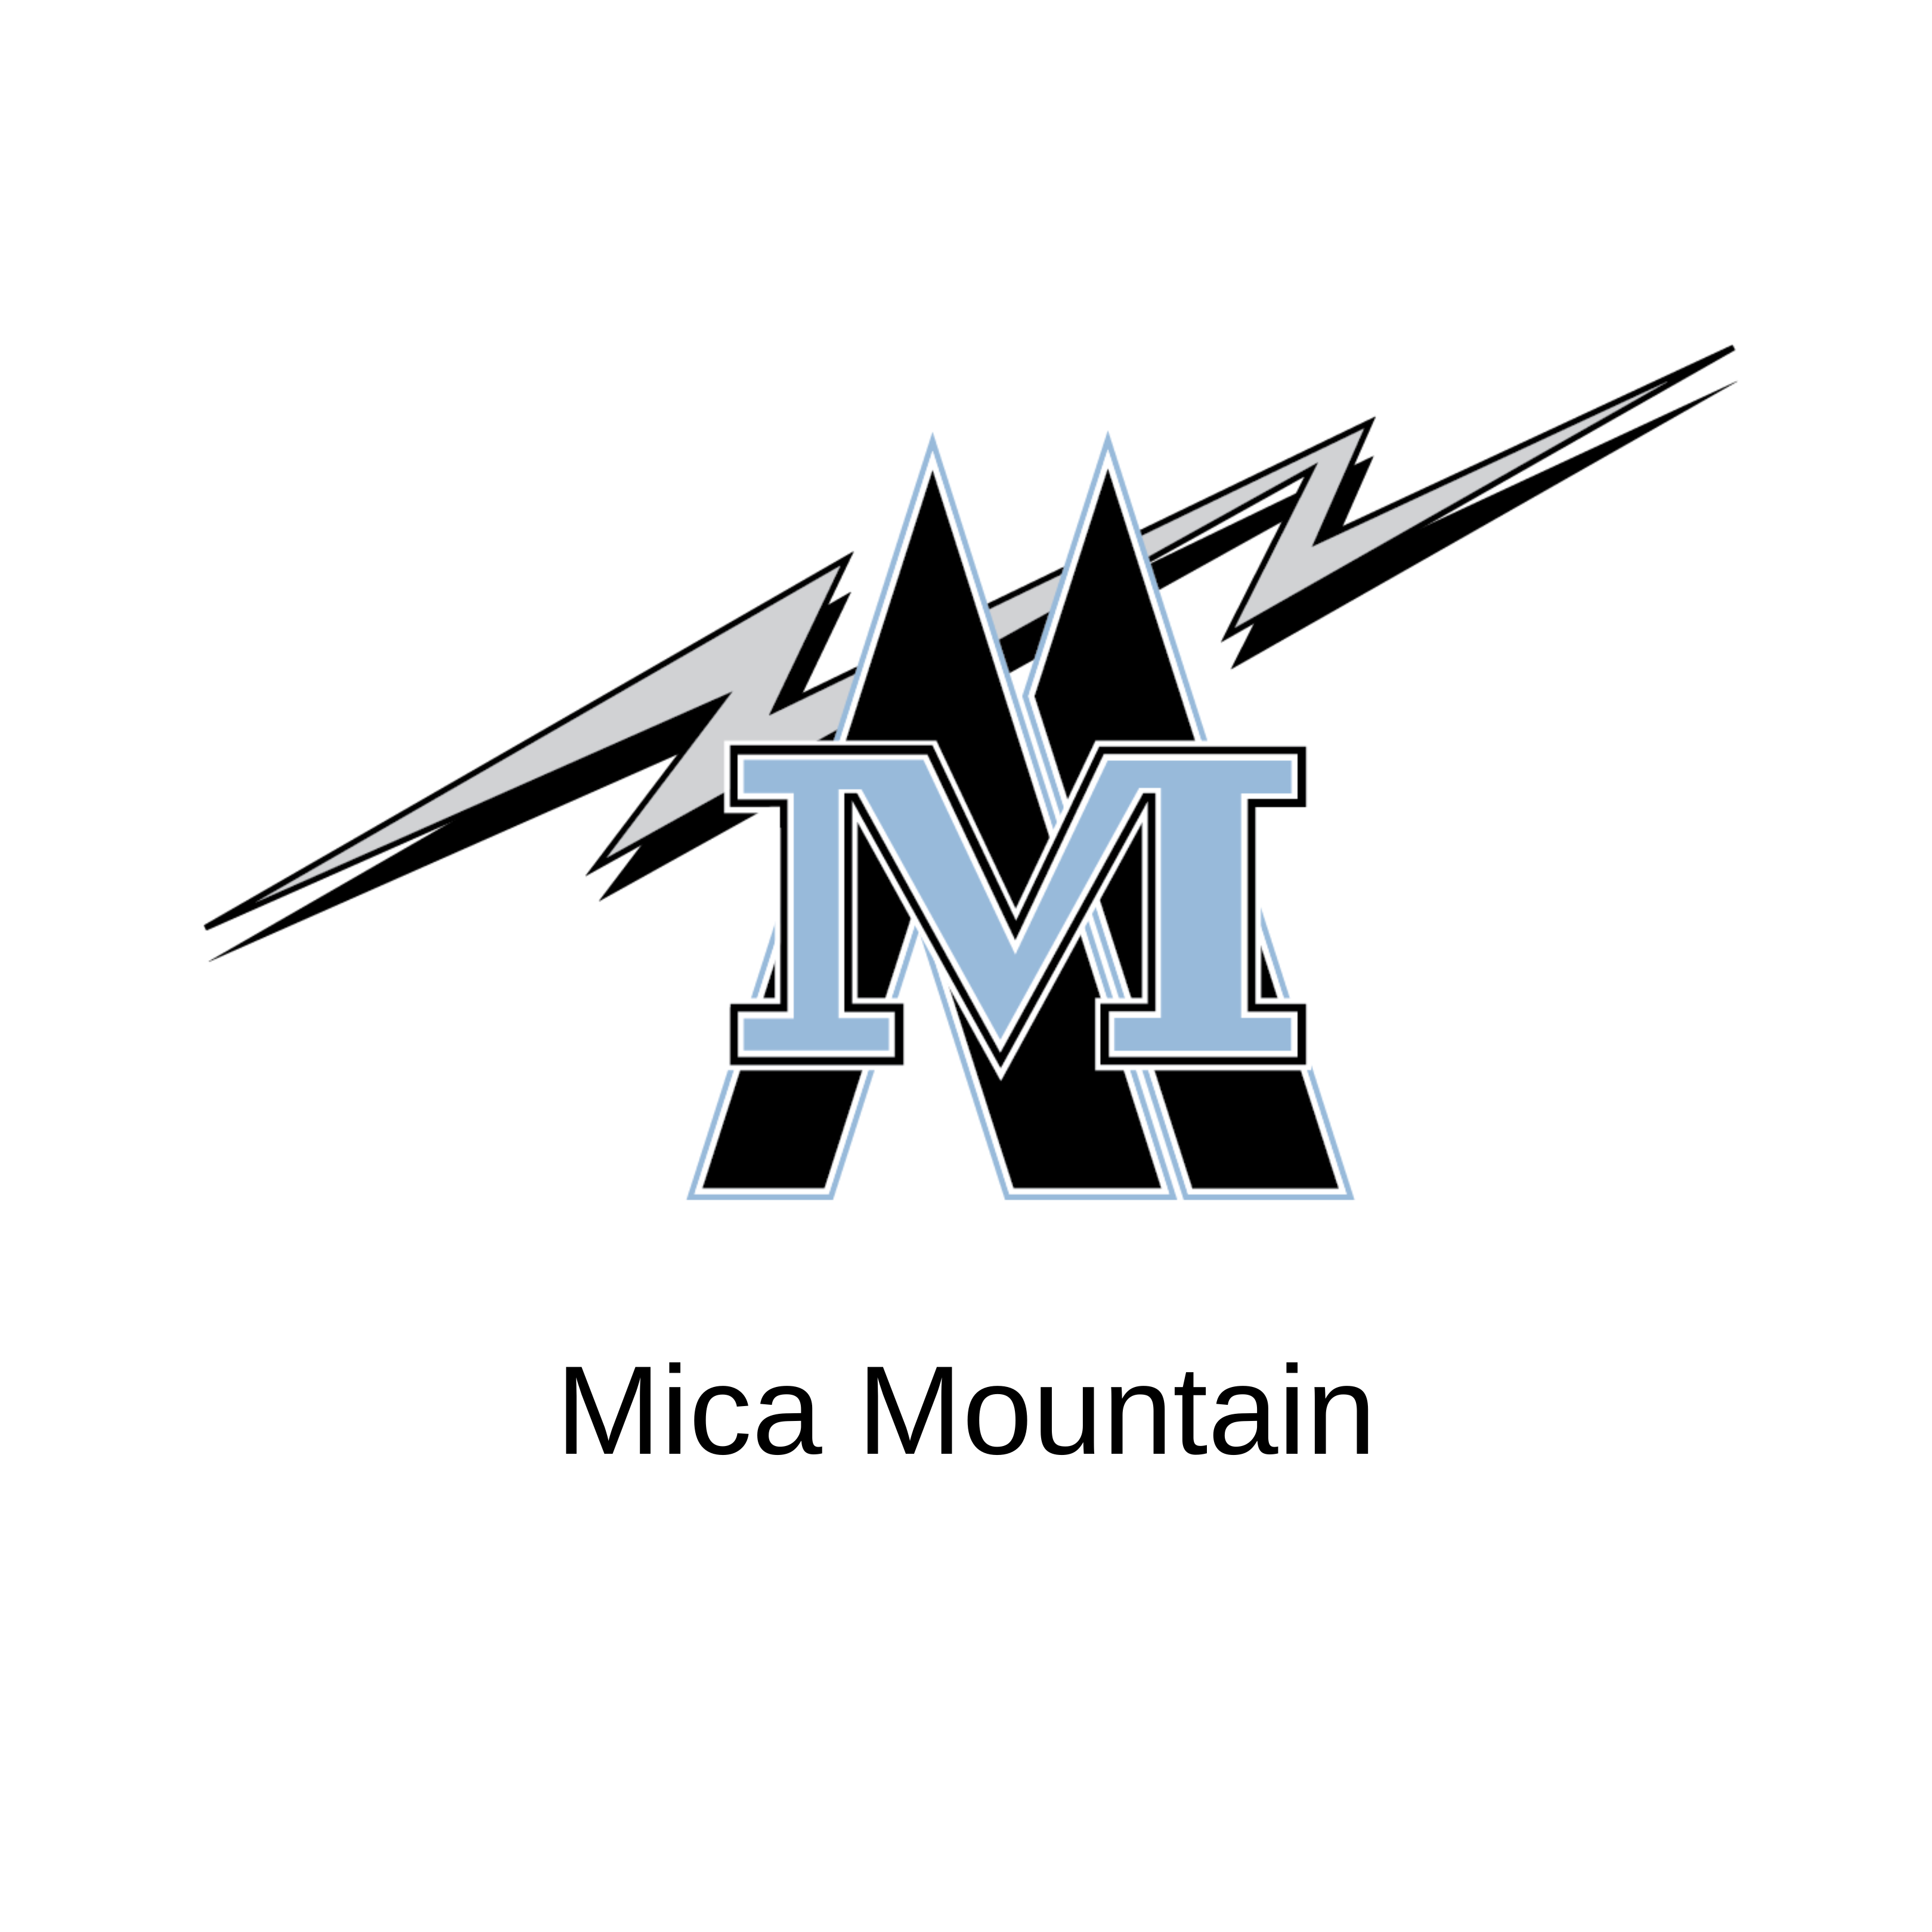 Mica Mountain logo